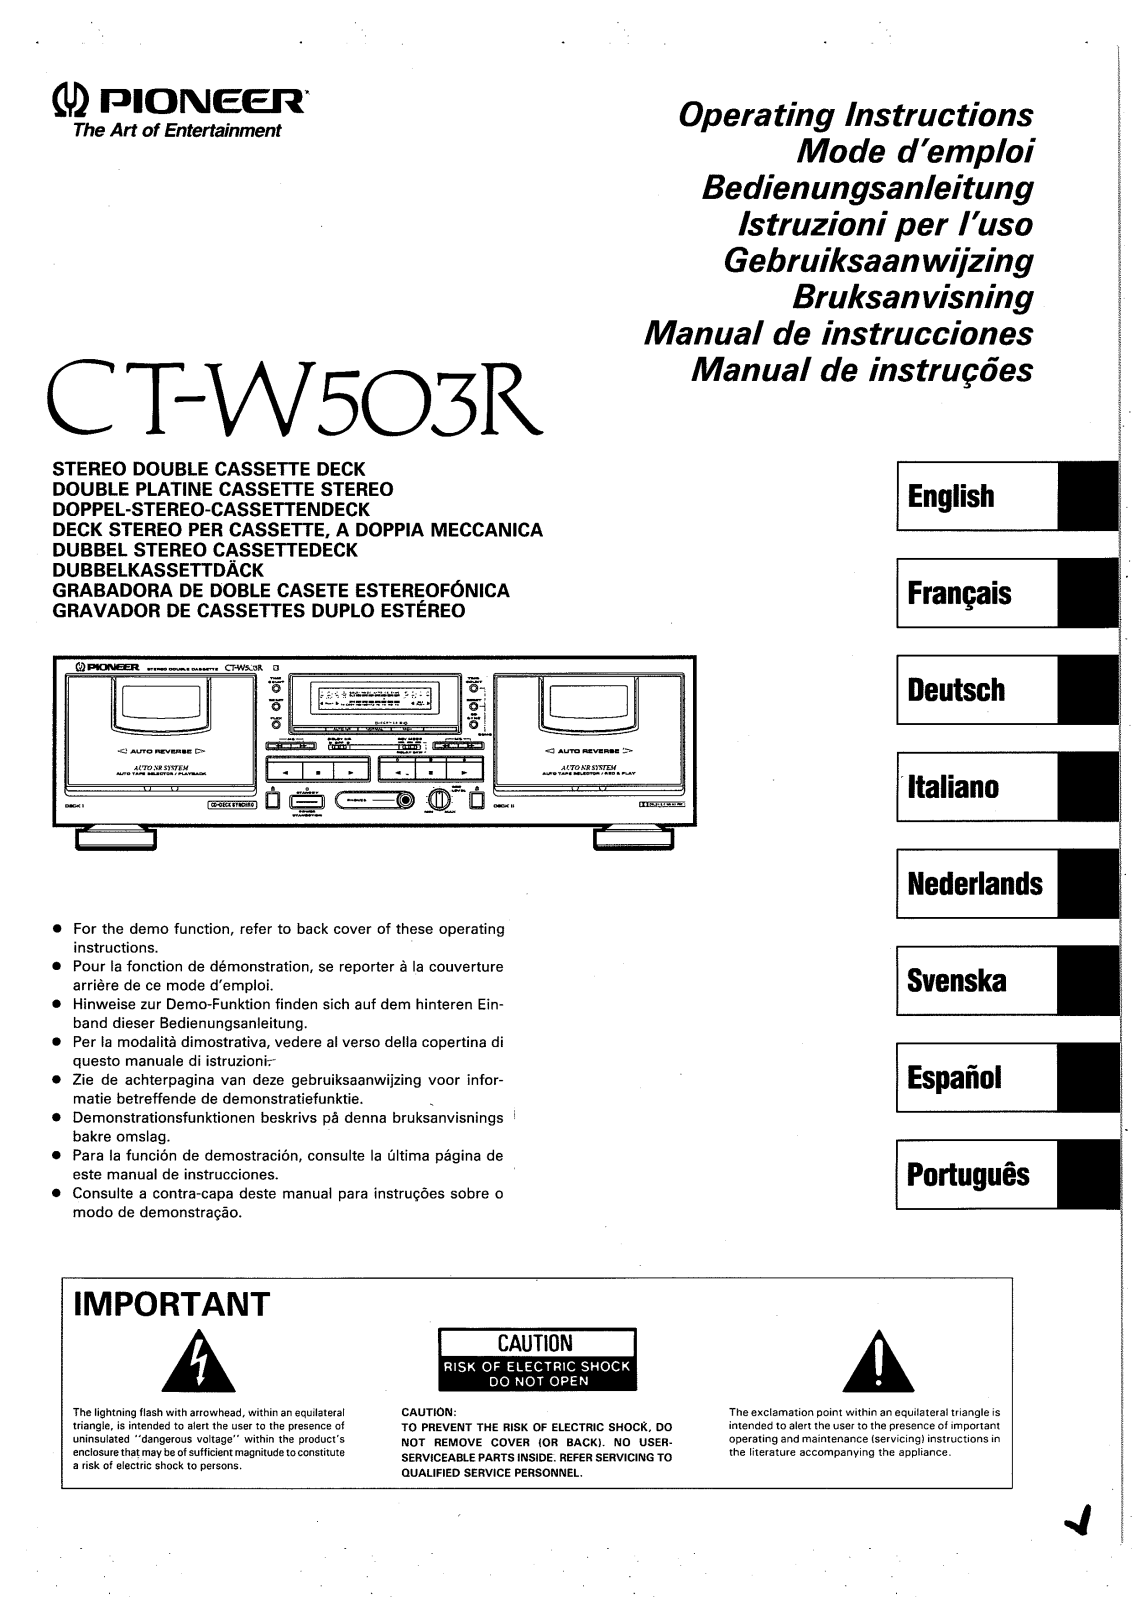 Pioneer CT-W503R Manual